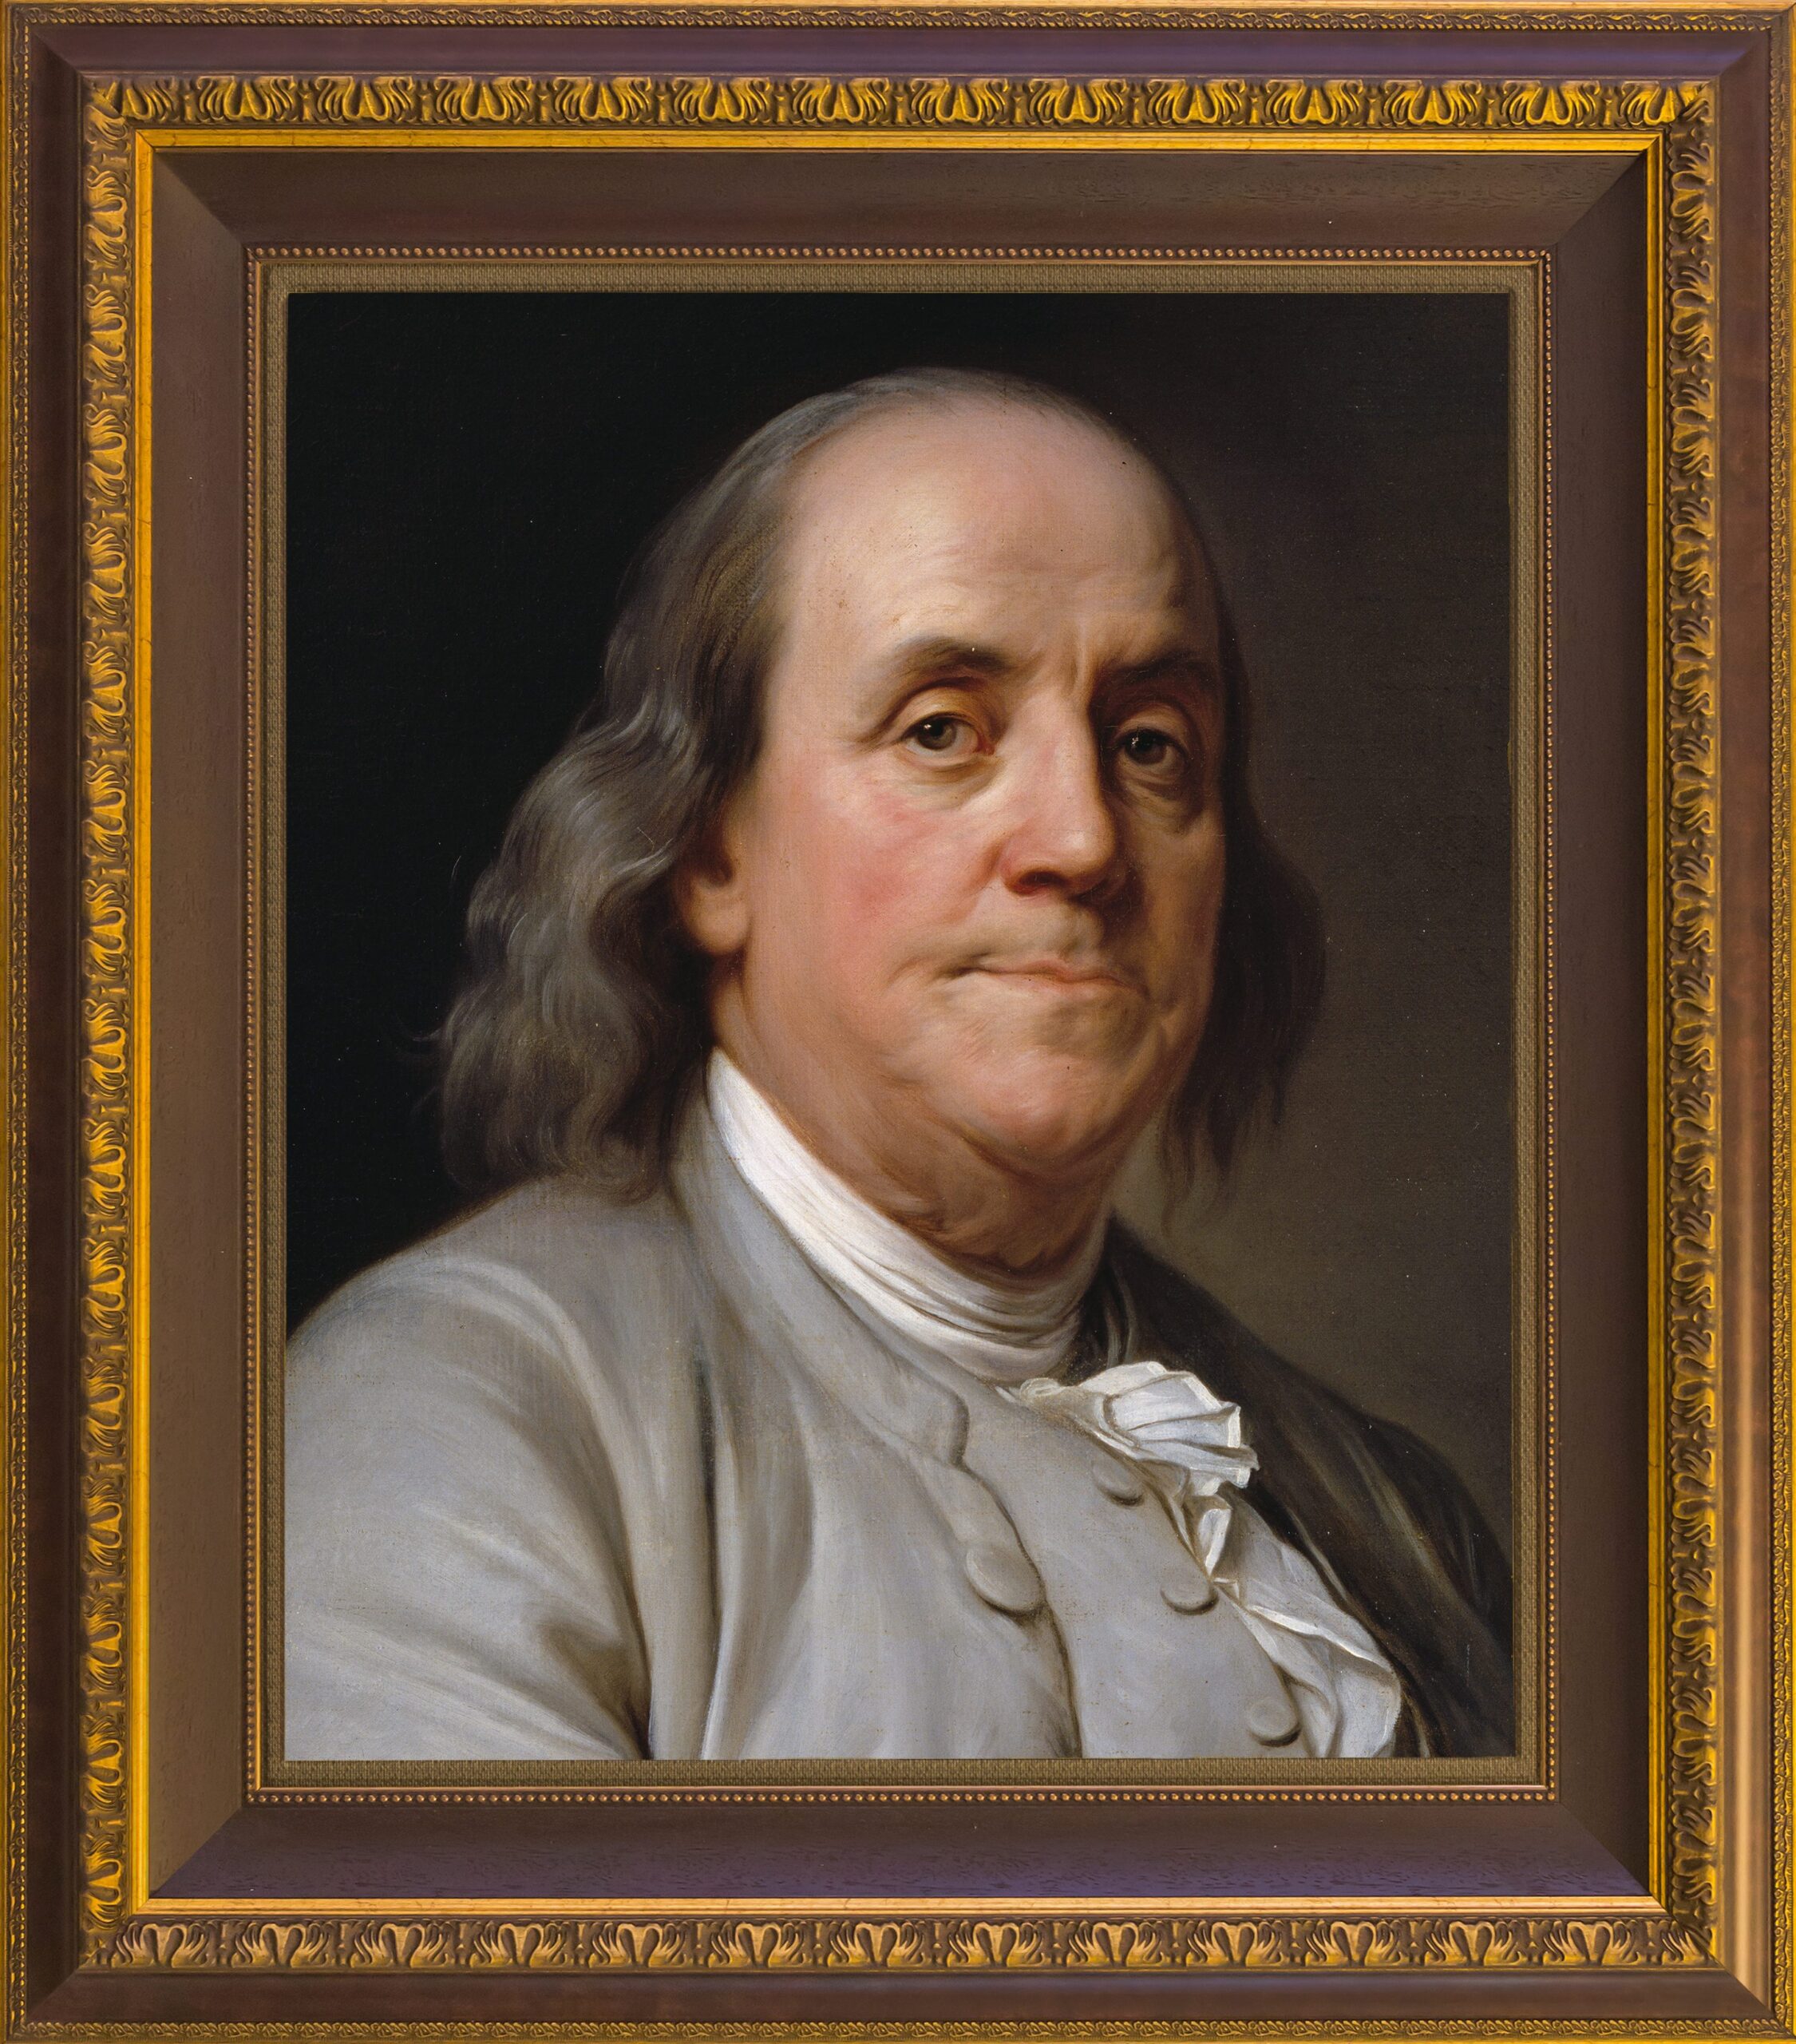 Benjamin Franklin National Memorial - Wikipedia